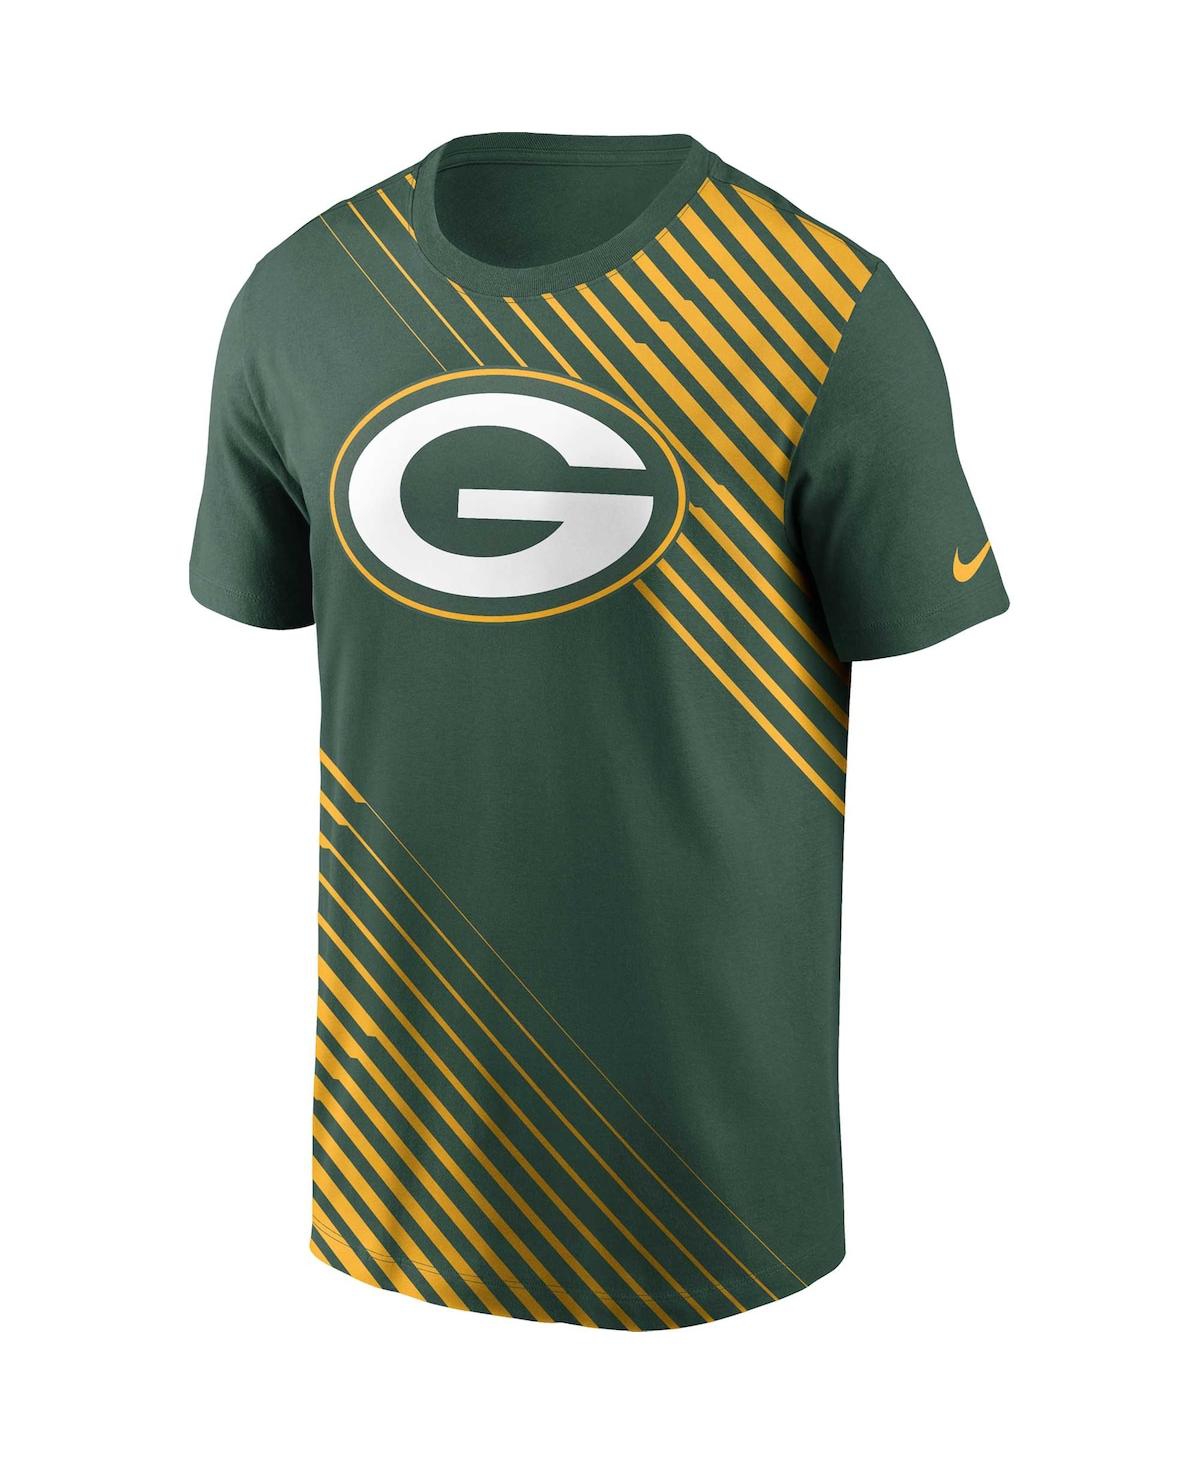 Shop Nike Men's  Green Green Bay Packers Yard Line Fashion Asbury T-shirt